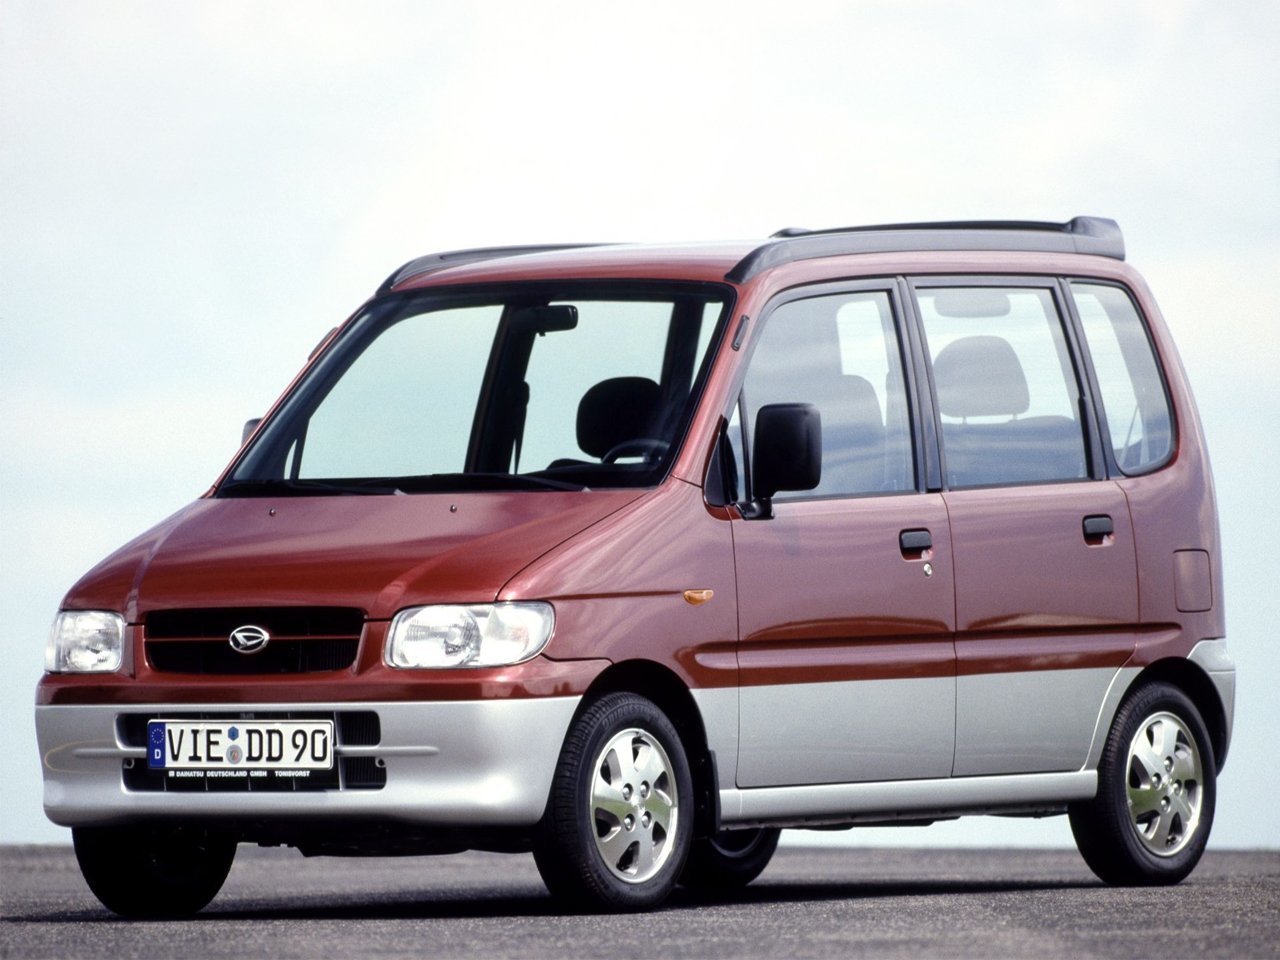 минивэн Daihatsu Move 1998 - 2009г выпуска модификация 0.7 AT (54 л.с.)